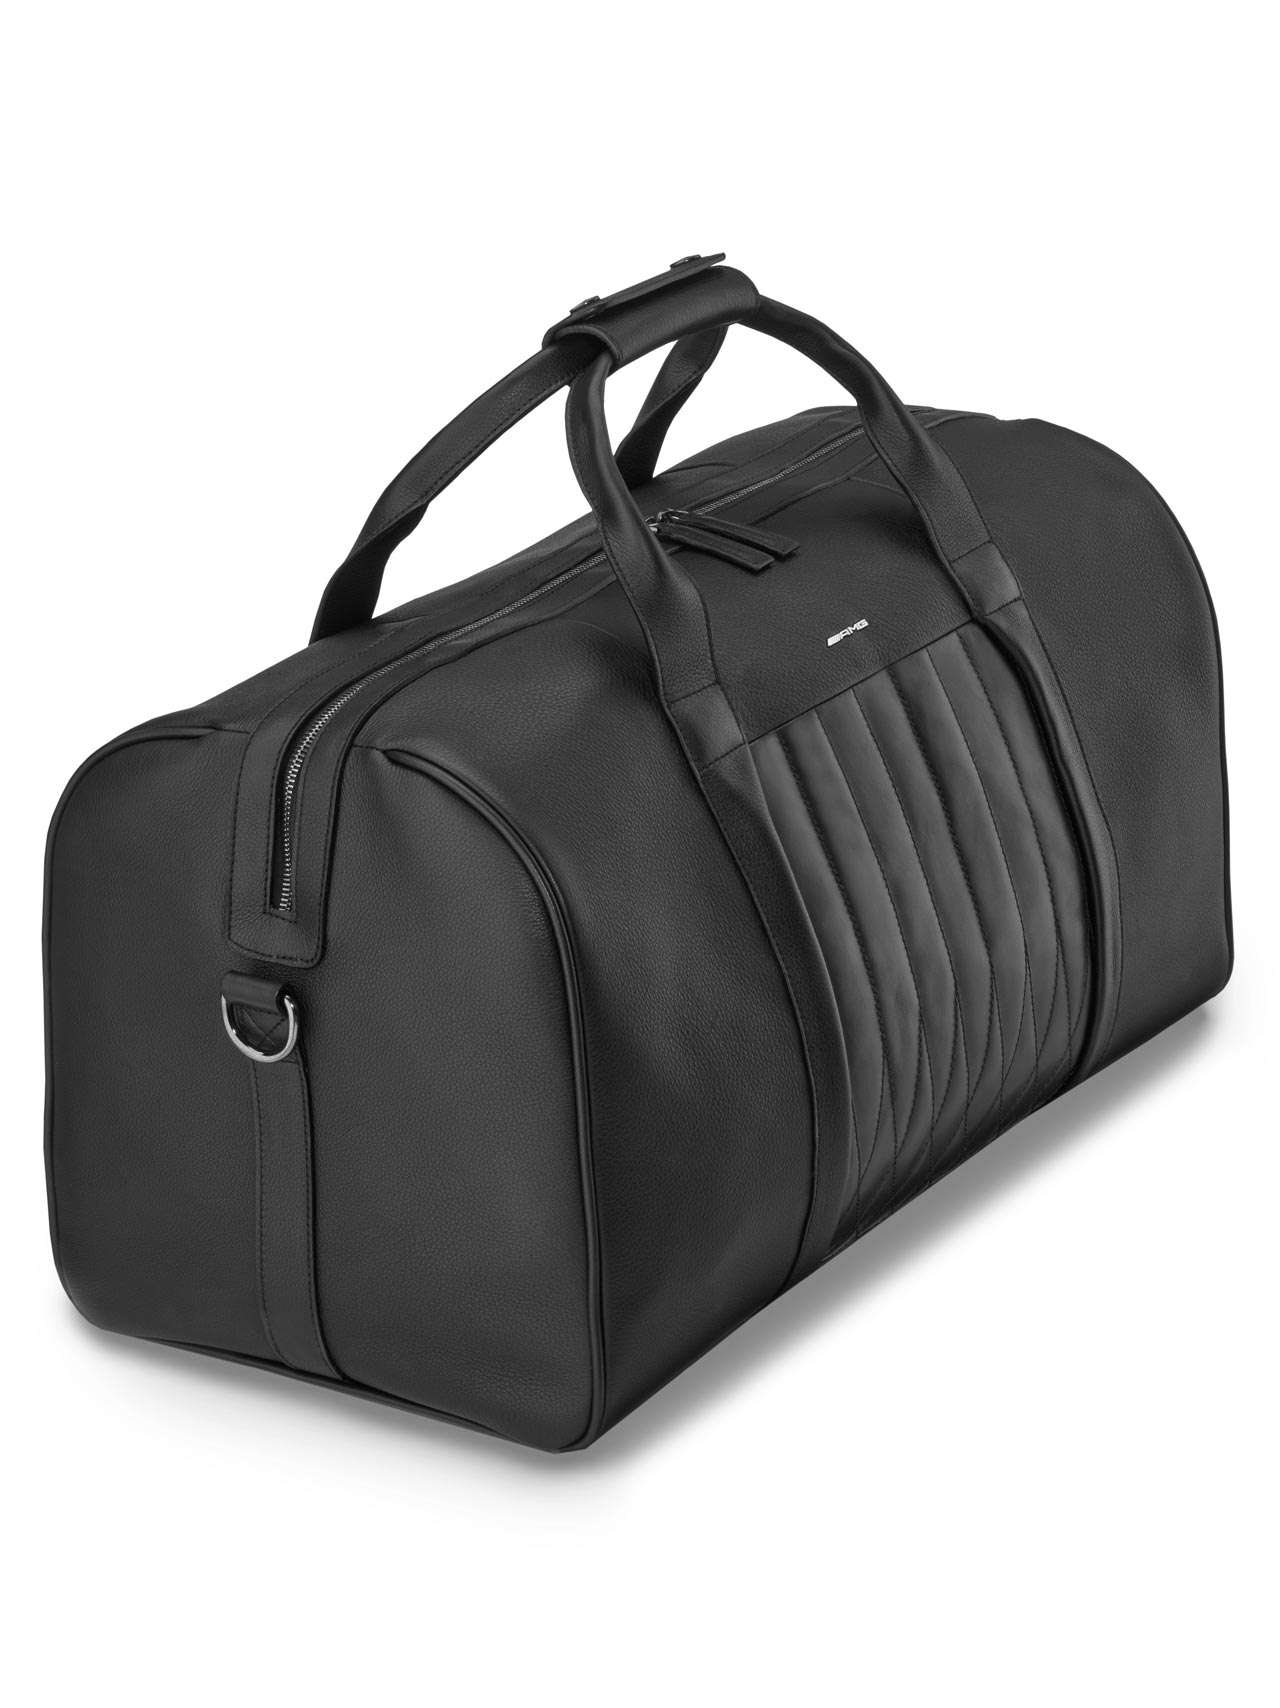 Bags, Mercedes Benz Weekend Large Matt Black Waterrepellent Travel Bag